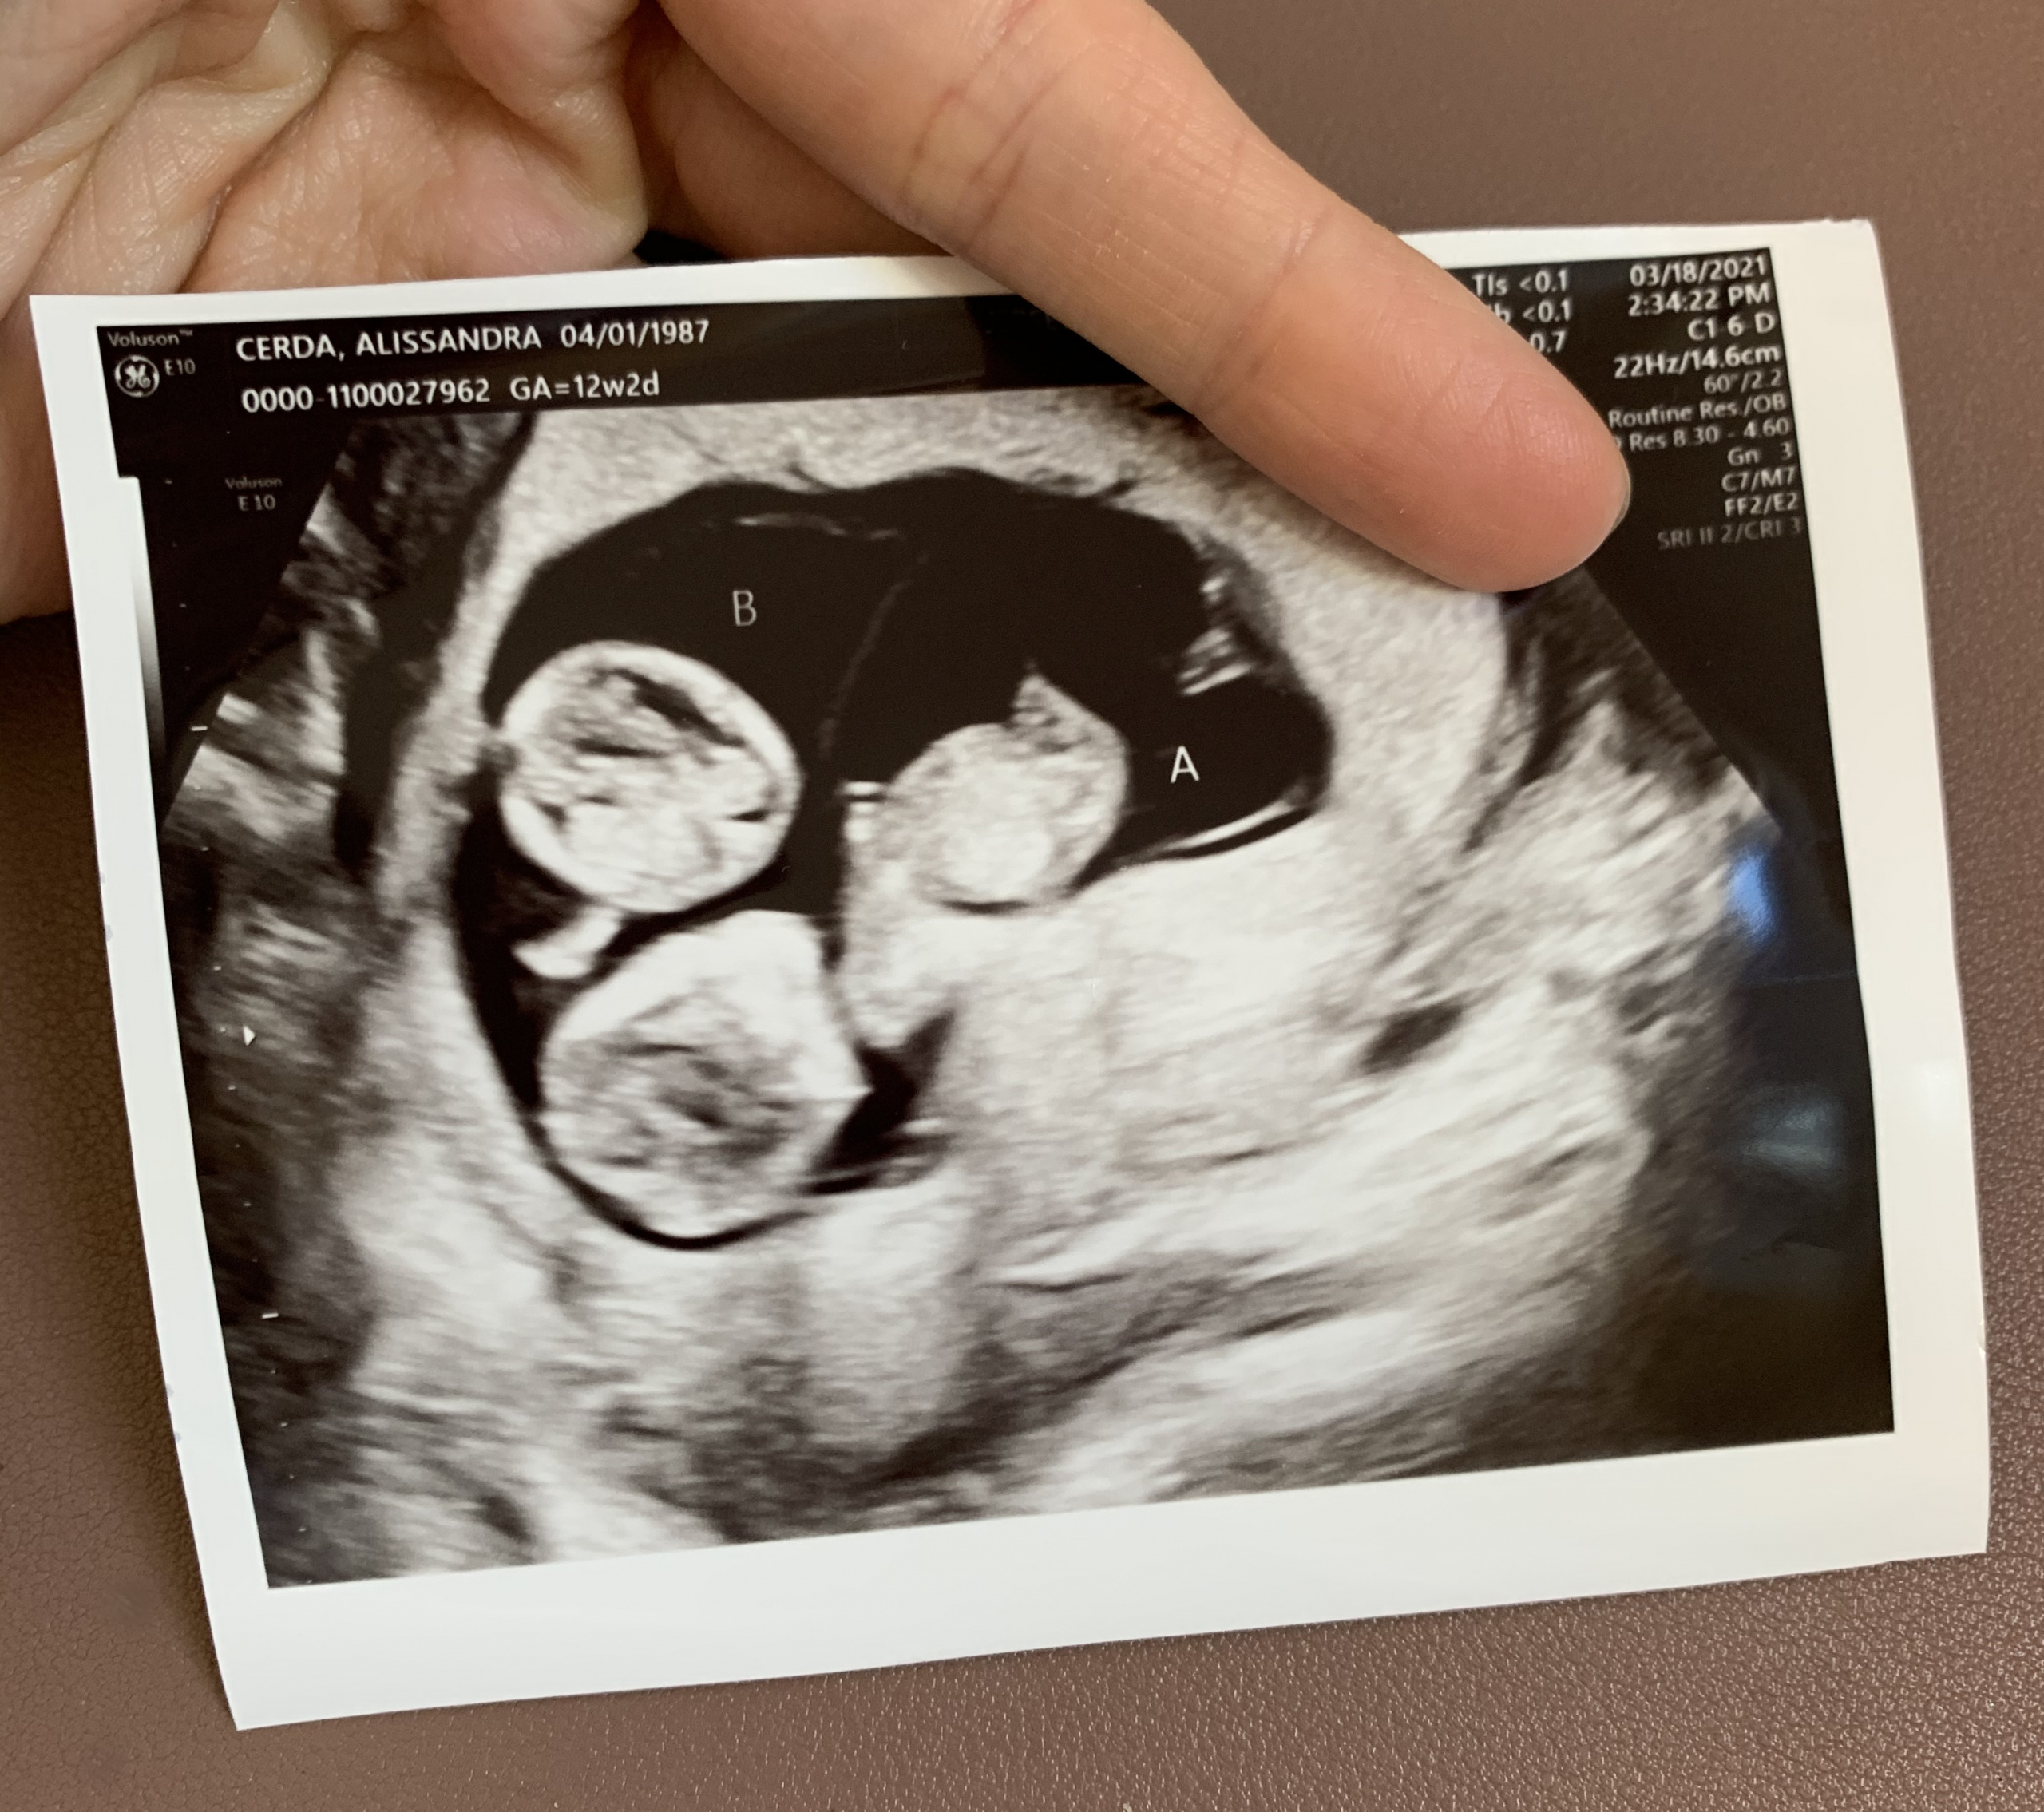 My 12 week ultrasound: twins it is! 